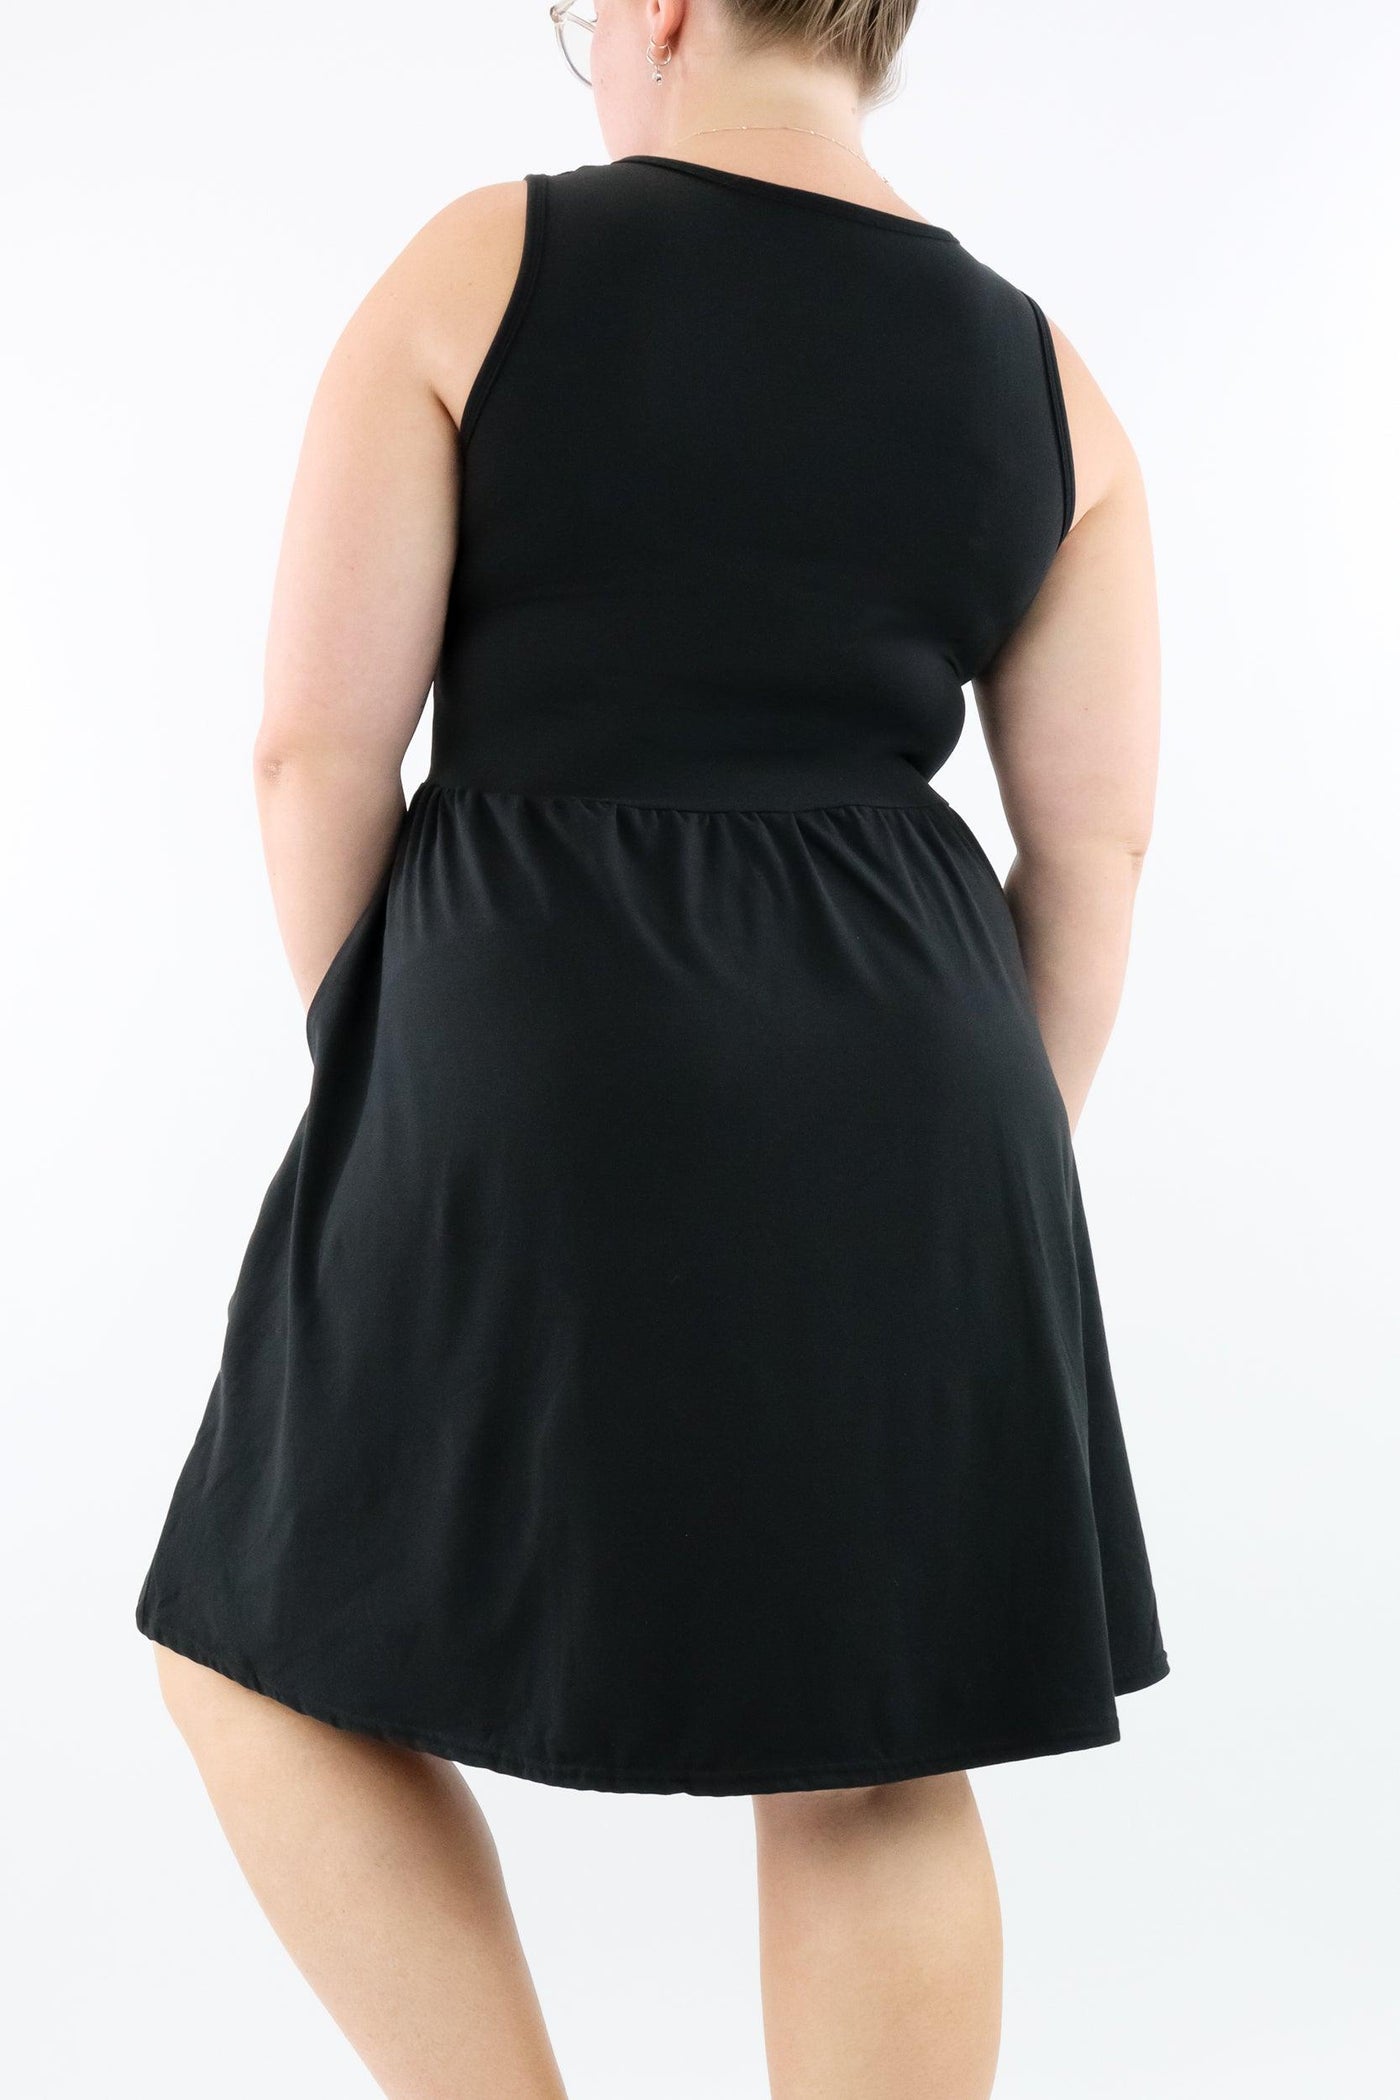 Black - Sleeveless Skater Dress - Knee Length - Side Pockets